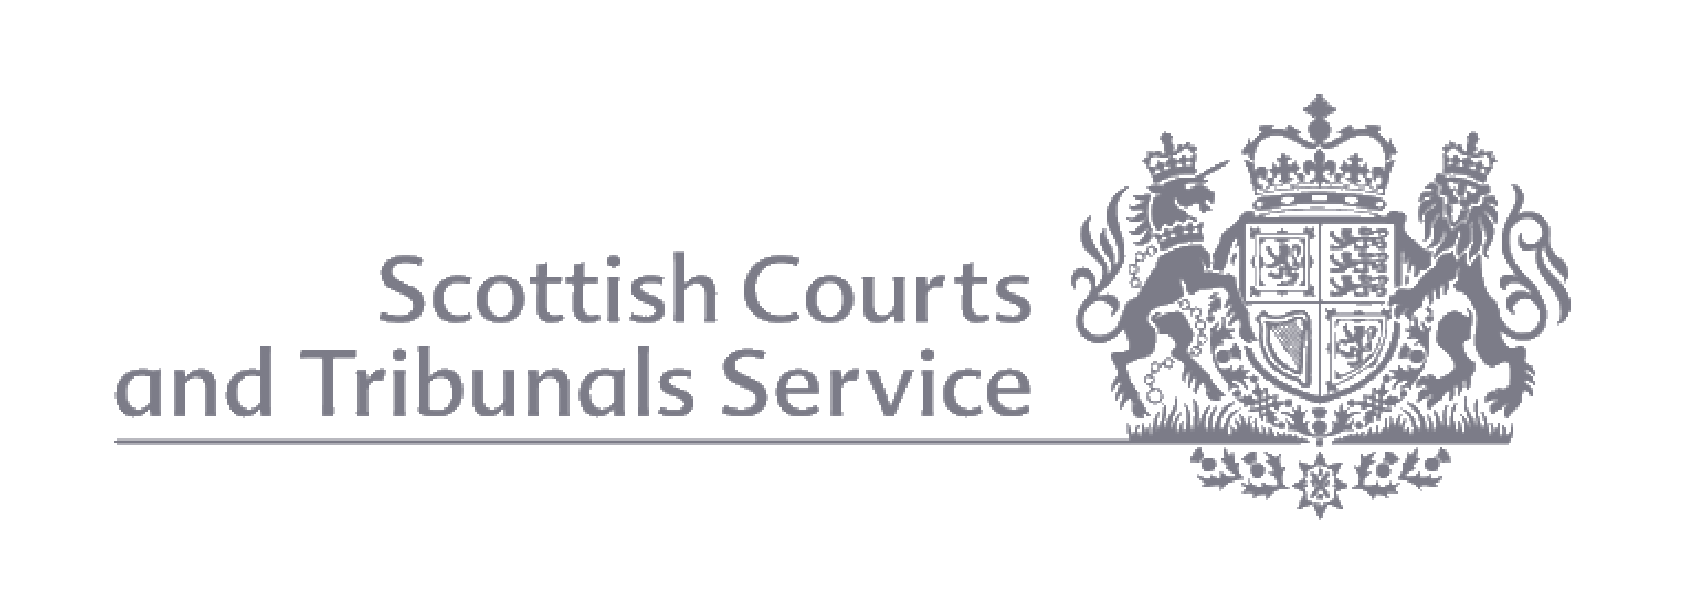 scotish-courts-logo-4